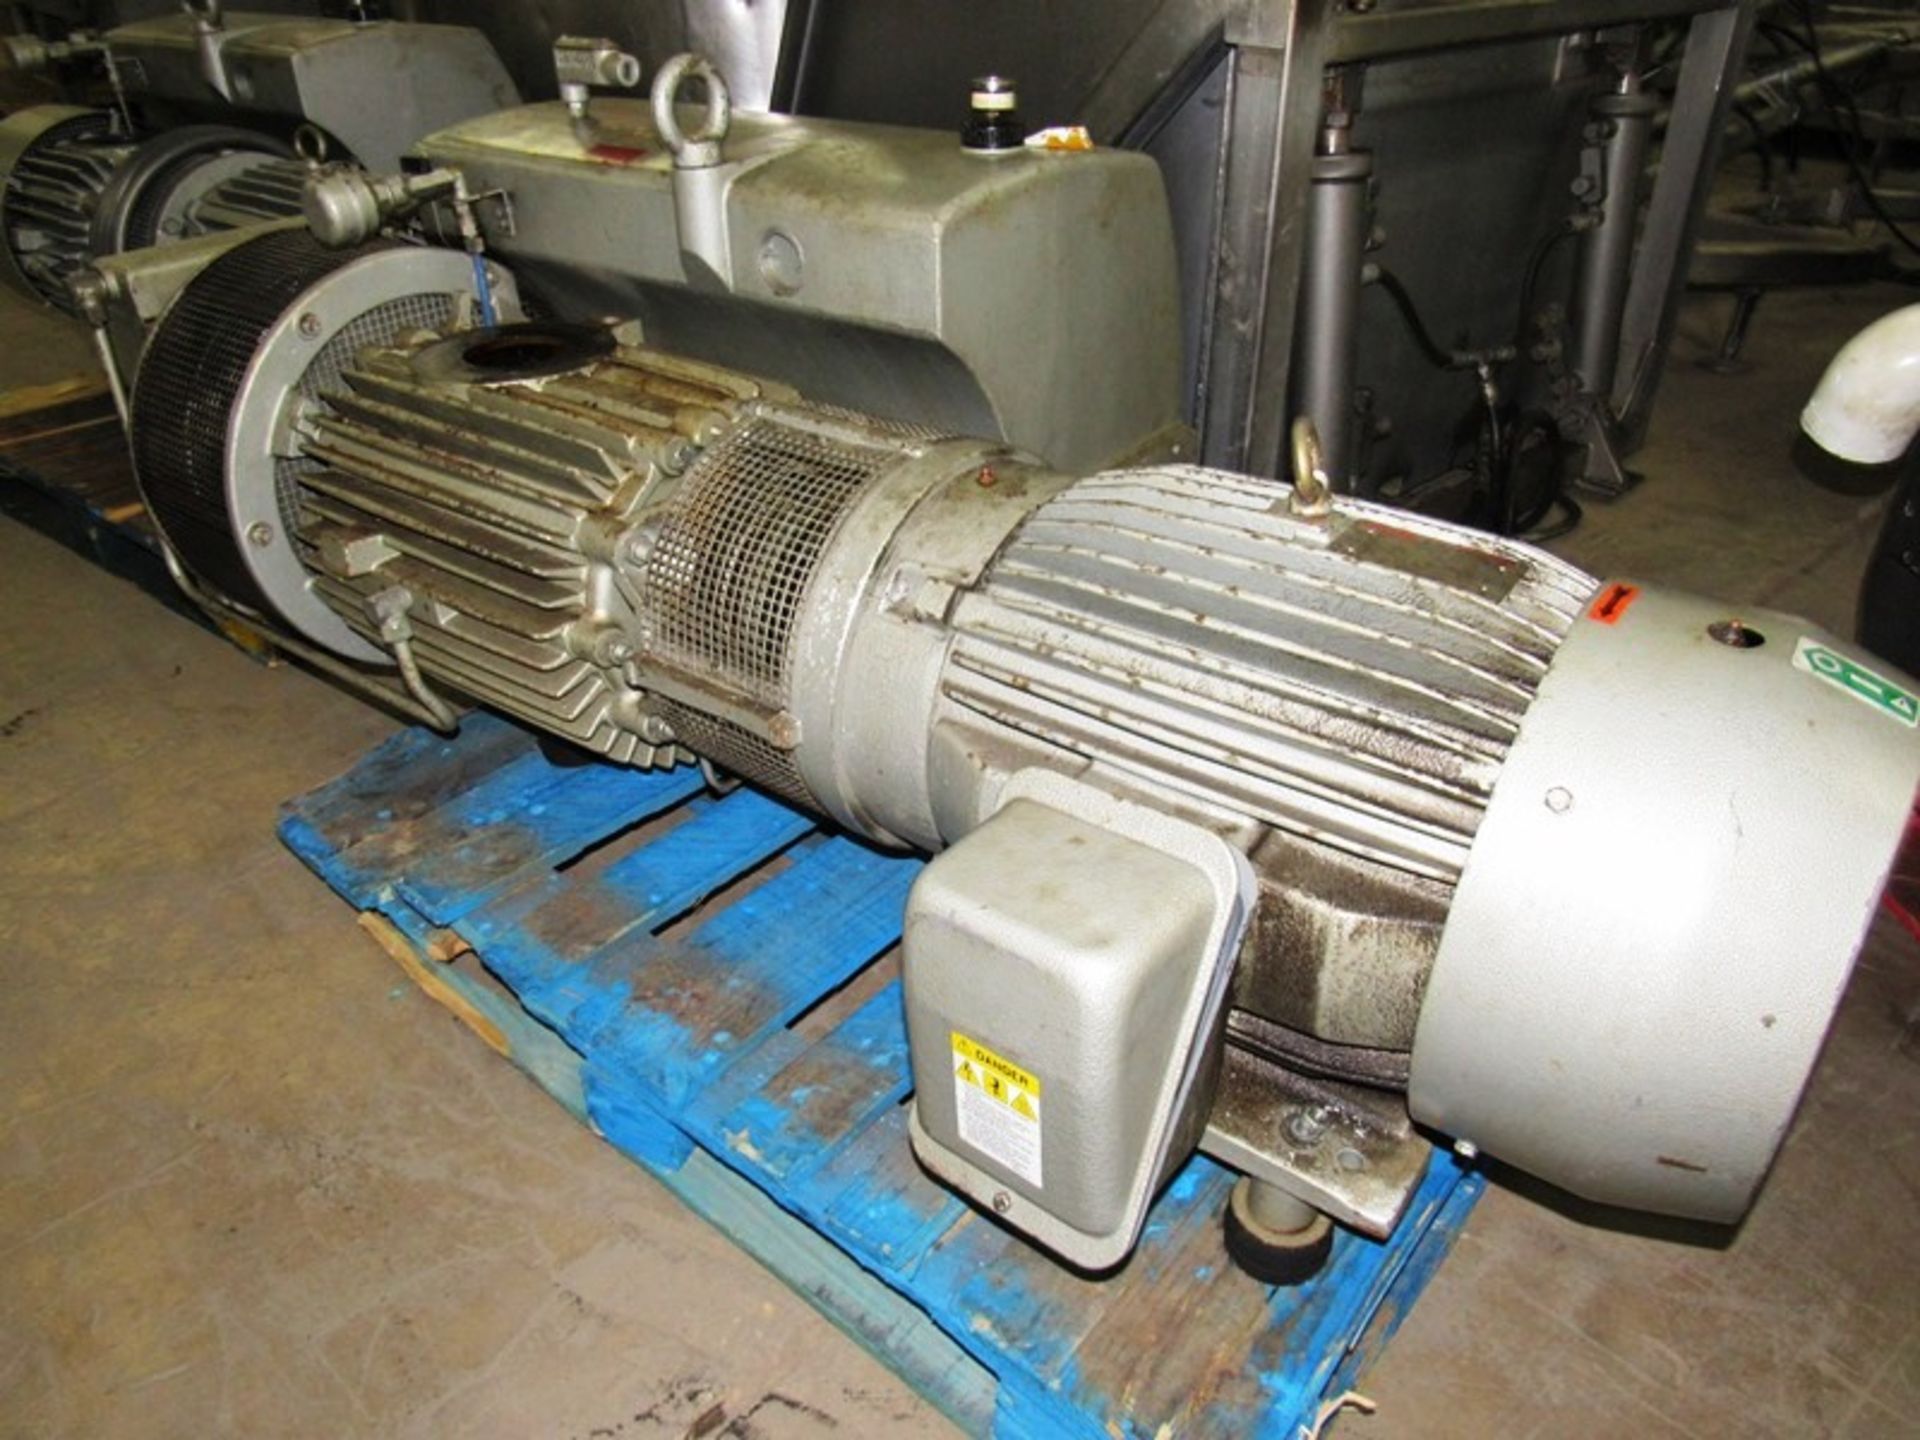 Busch Mdl. RAO630.B4Z6.1001 Vacuum Pump, Ser. #C8031, 25 h.p. Toshiba motor, 230/460 volts with heat - Bild 4 aus 6